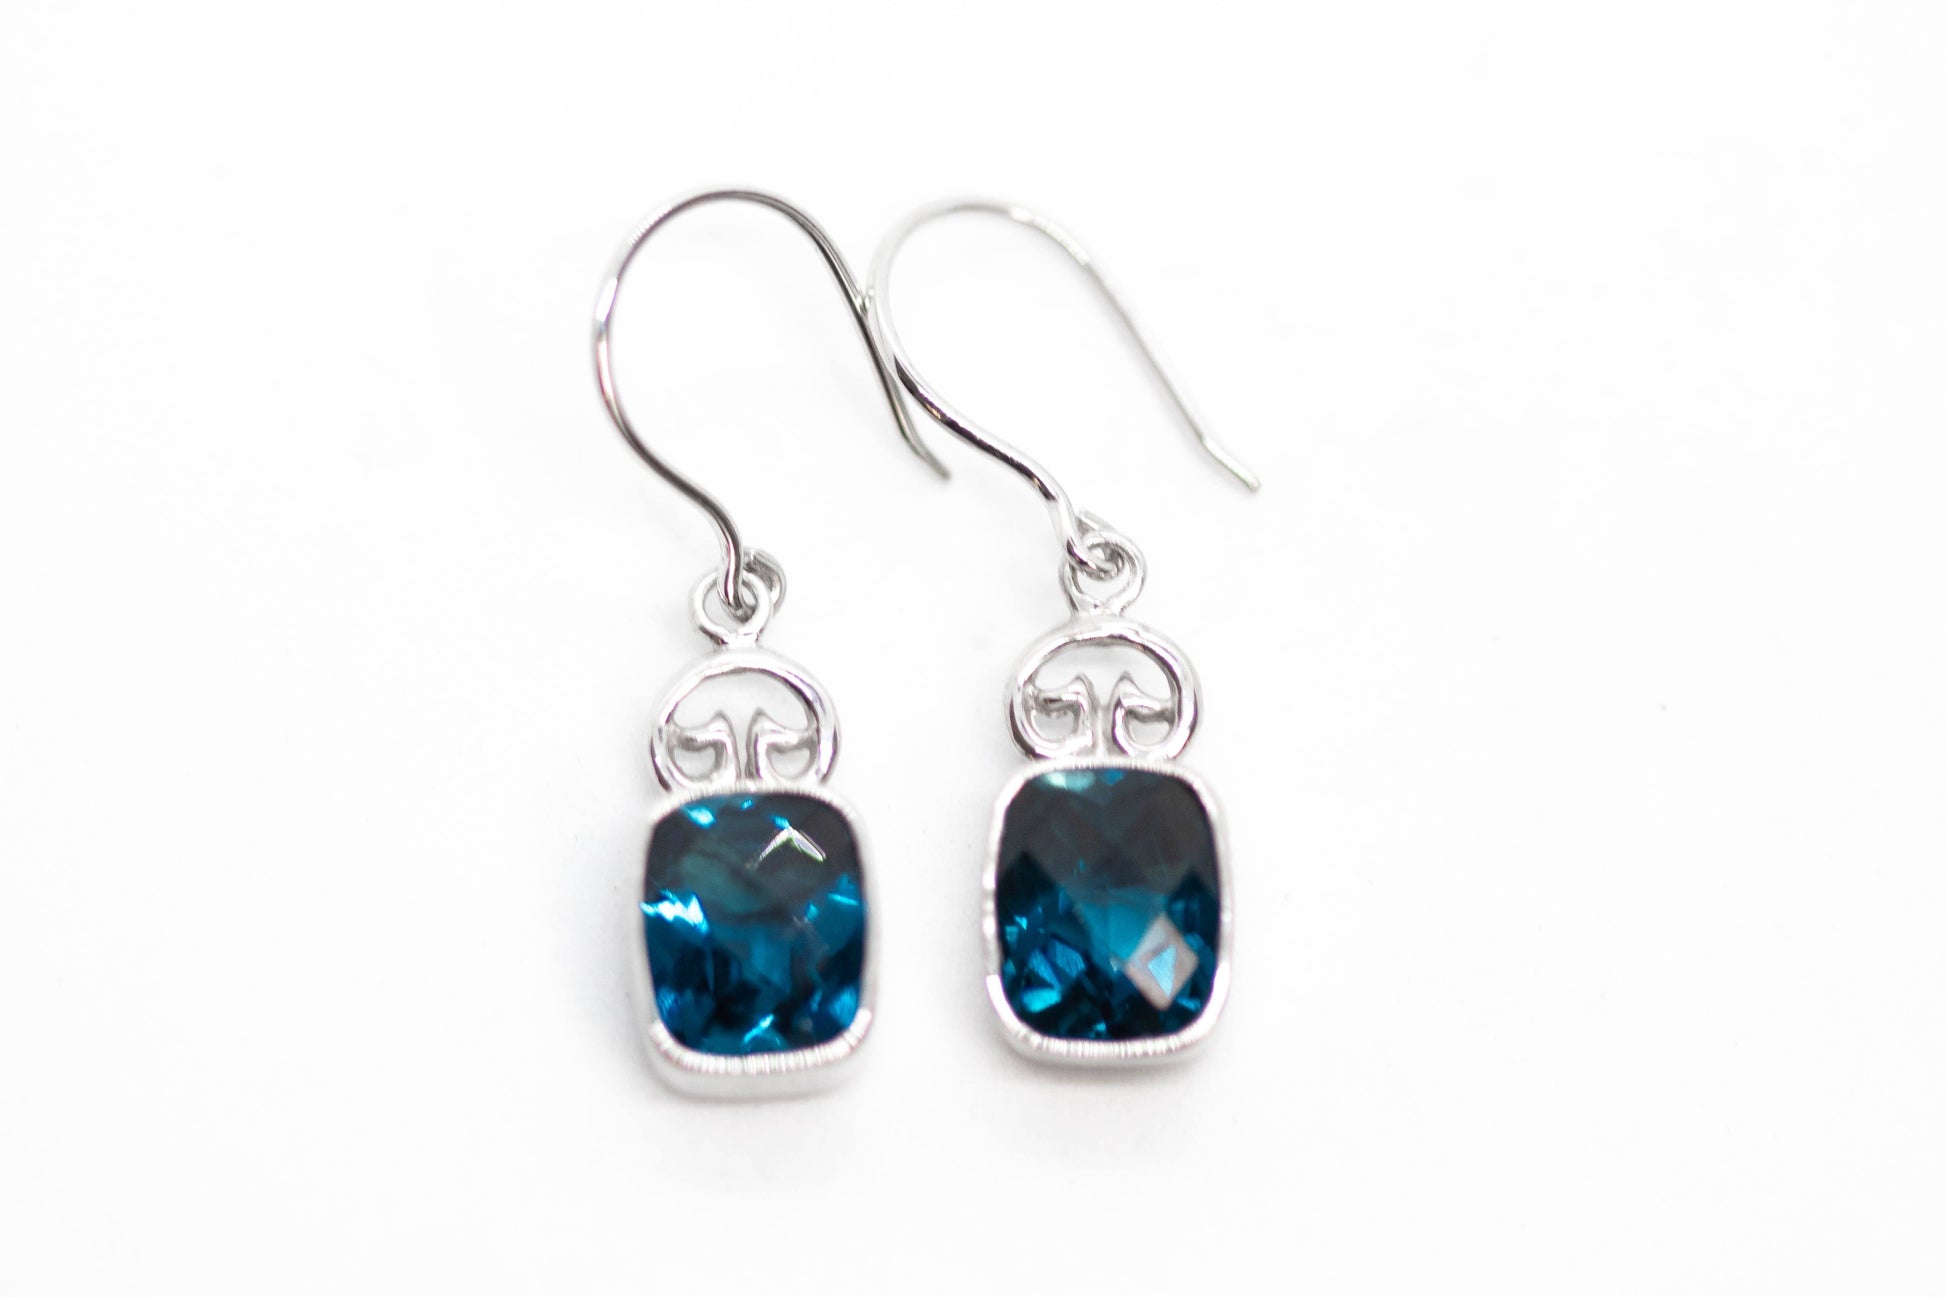 Coral Bay Earrings Earrings London Blue Topaz